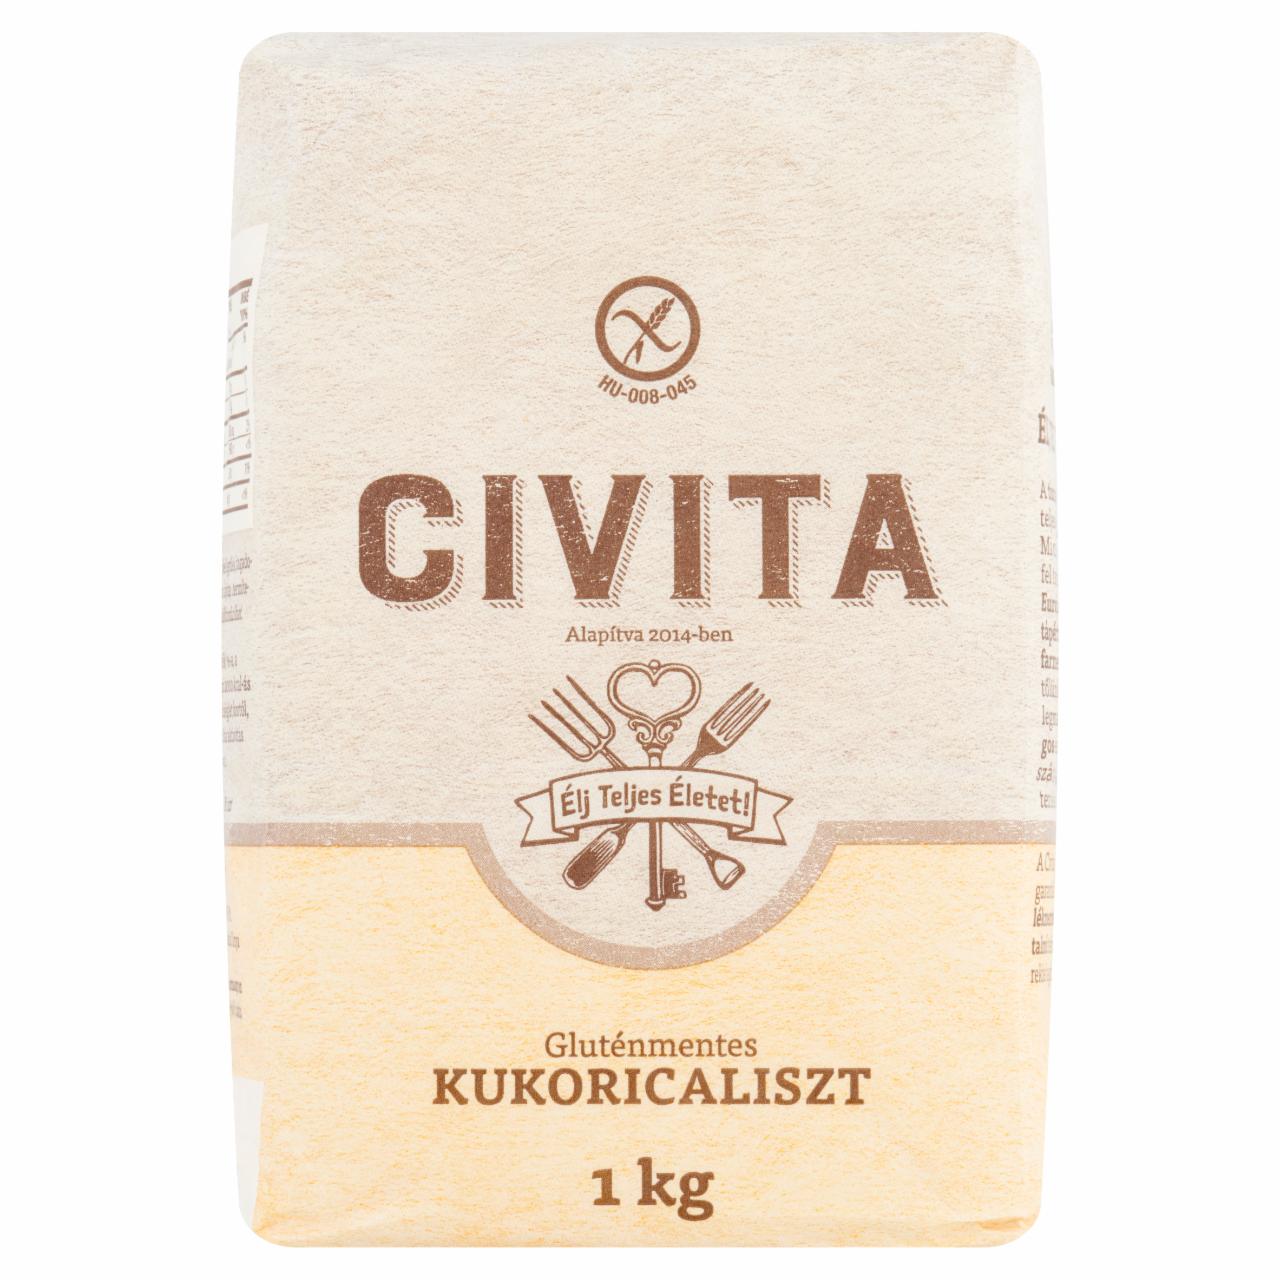 Képek - Civita gluténmentes kukoricaliszt 1 kg